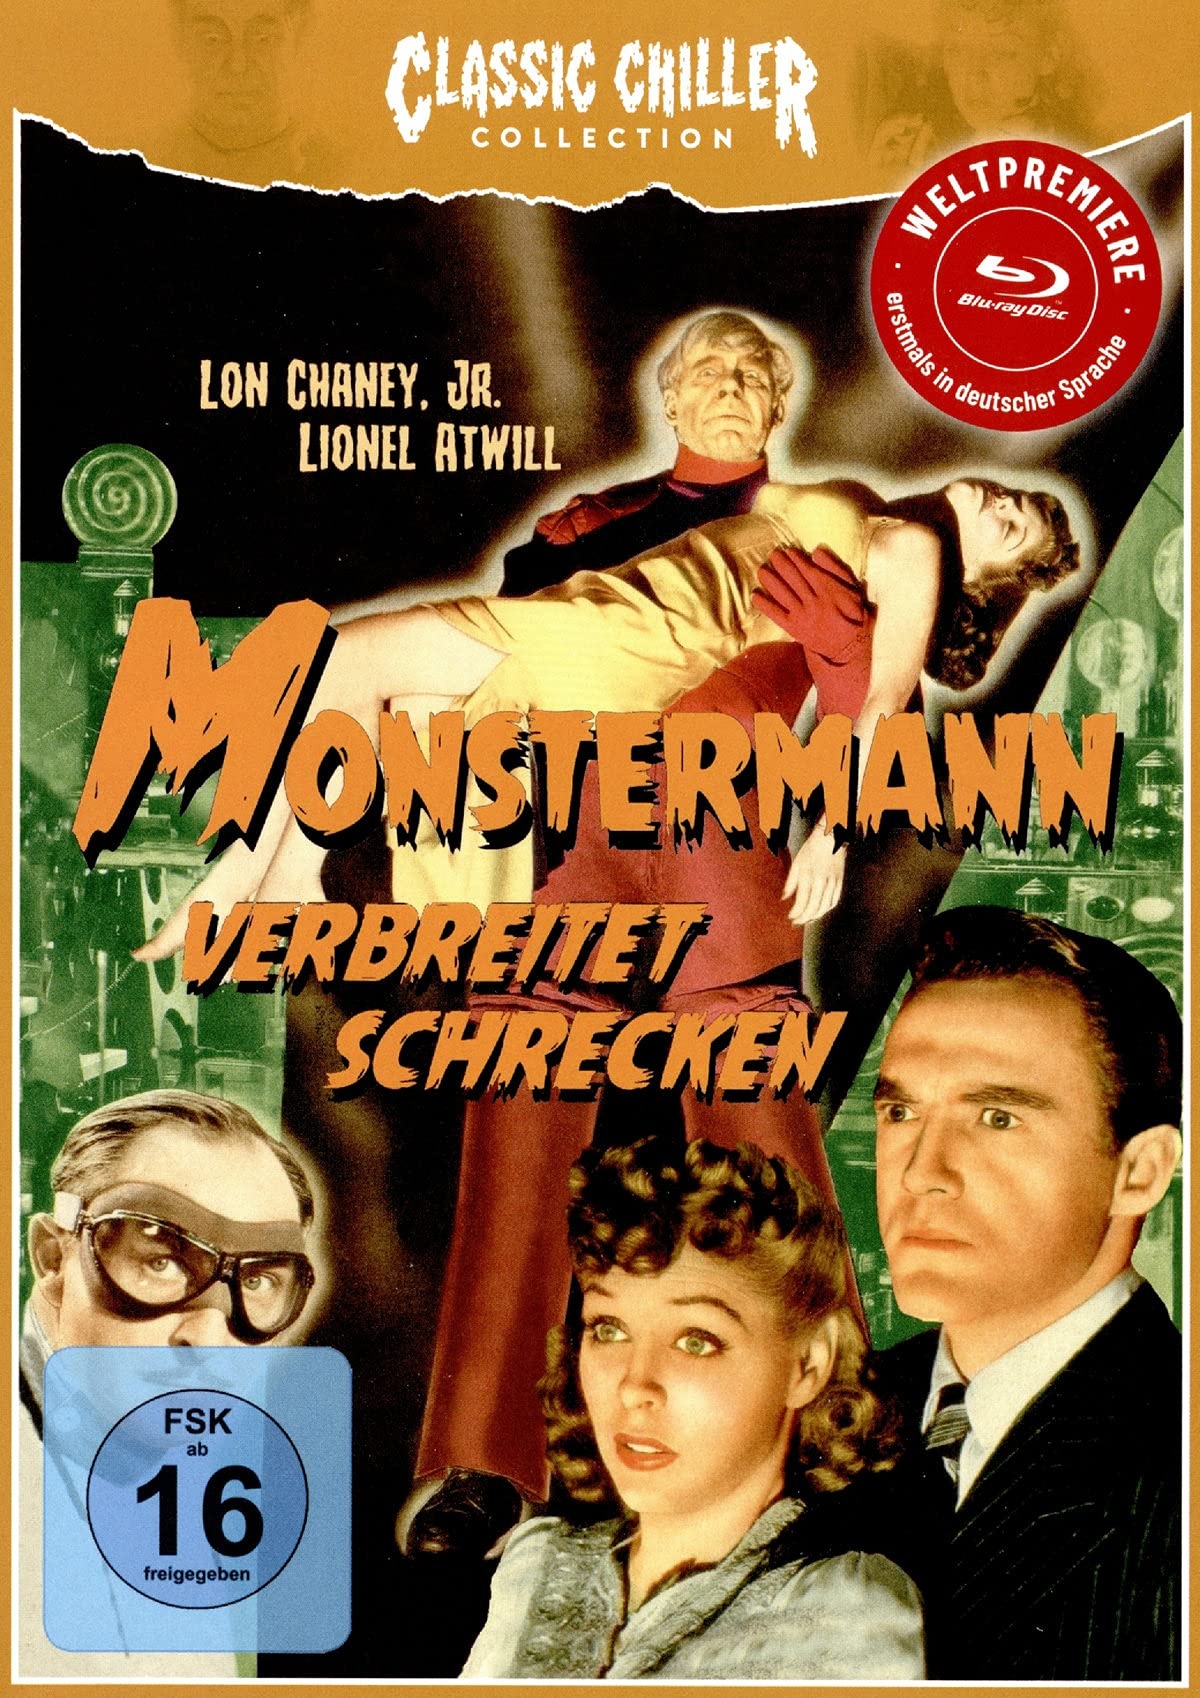 MONSTERMANN VERBREITET SCHRECKEN (Blu-Ray Weltpremiere) - CLASSIC CHILLER COLLECTION # 12 - LIMITED EDITION (Neu differenzbesteuert)